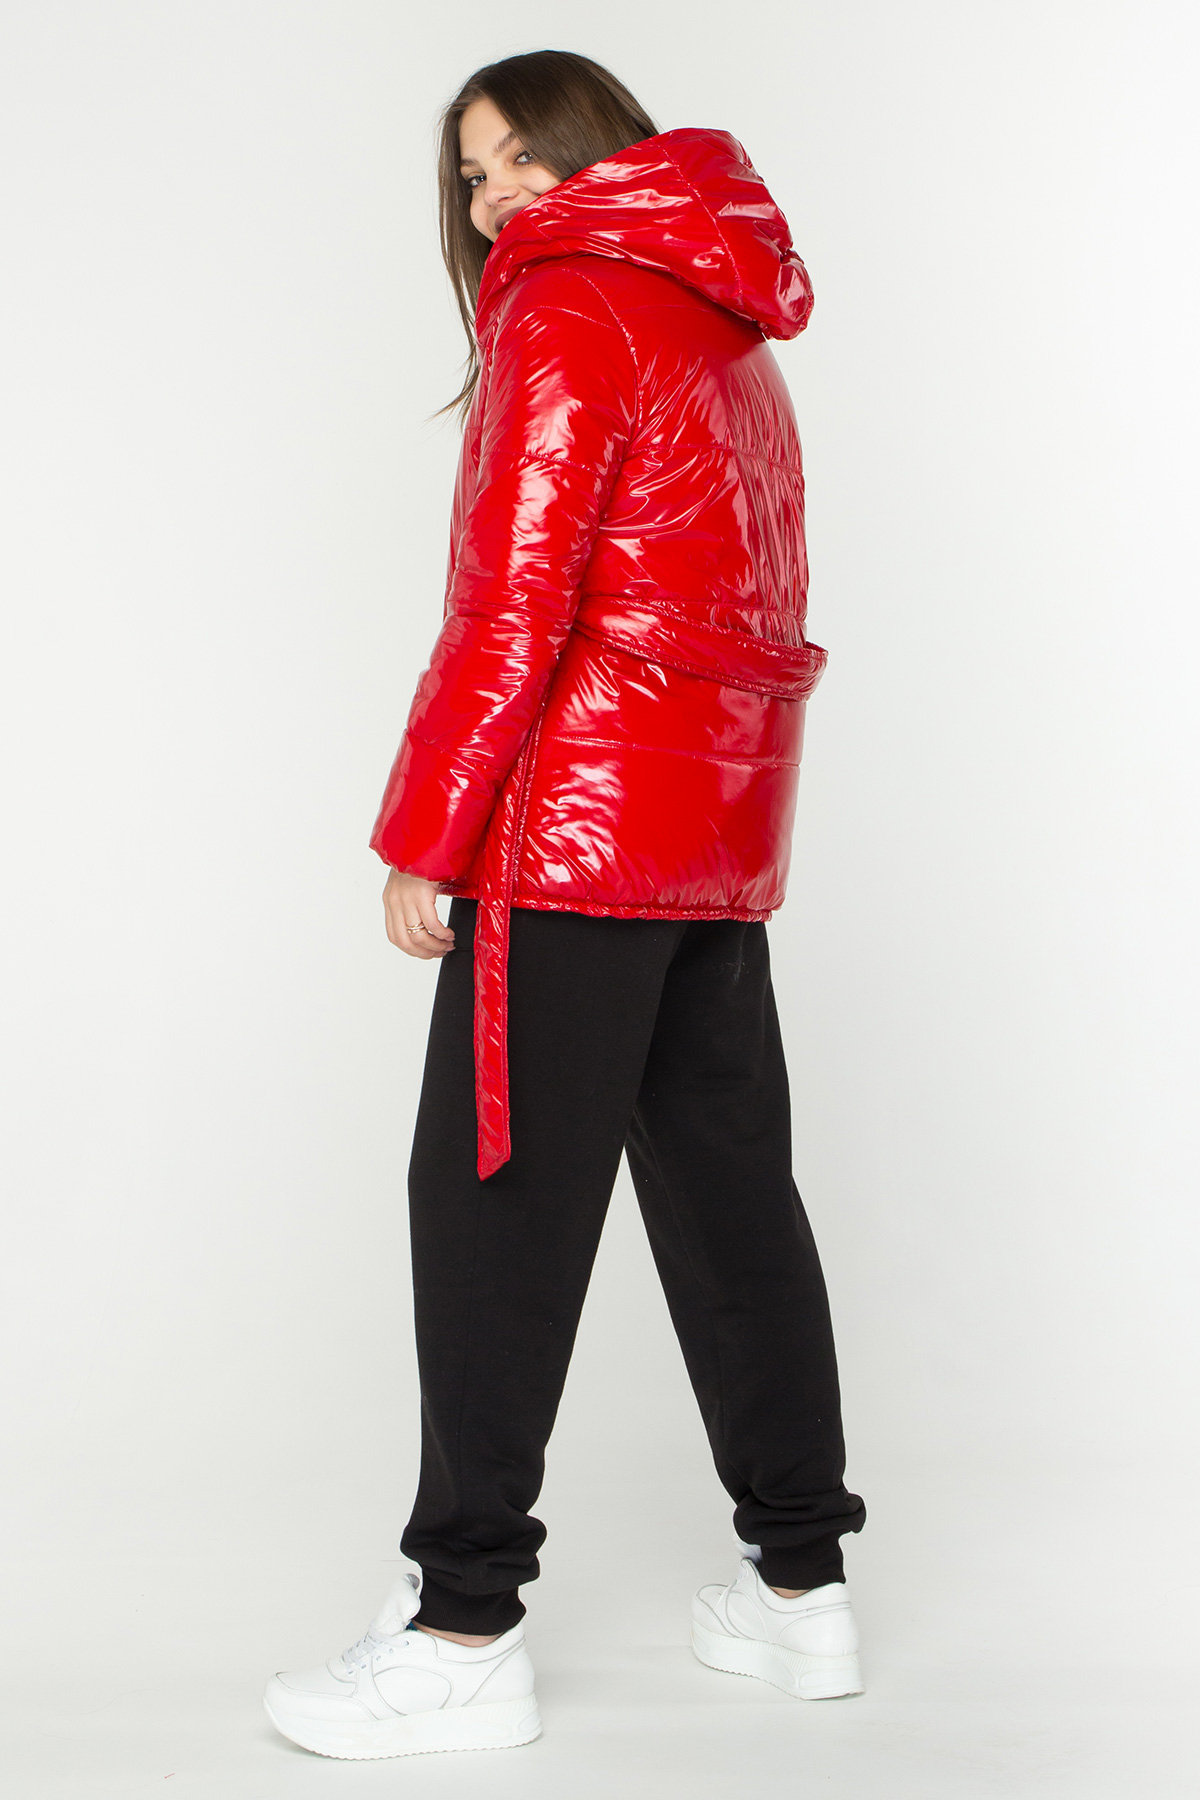 Лаковая куртка пуховик с поясом Бумер 8696 АРТ. 45034 Цвет: Красный - фото 8, интернет магазин tm-modus.ru